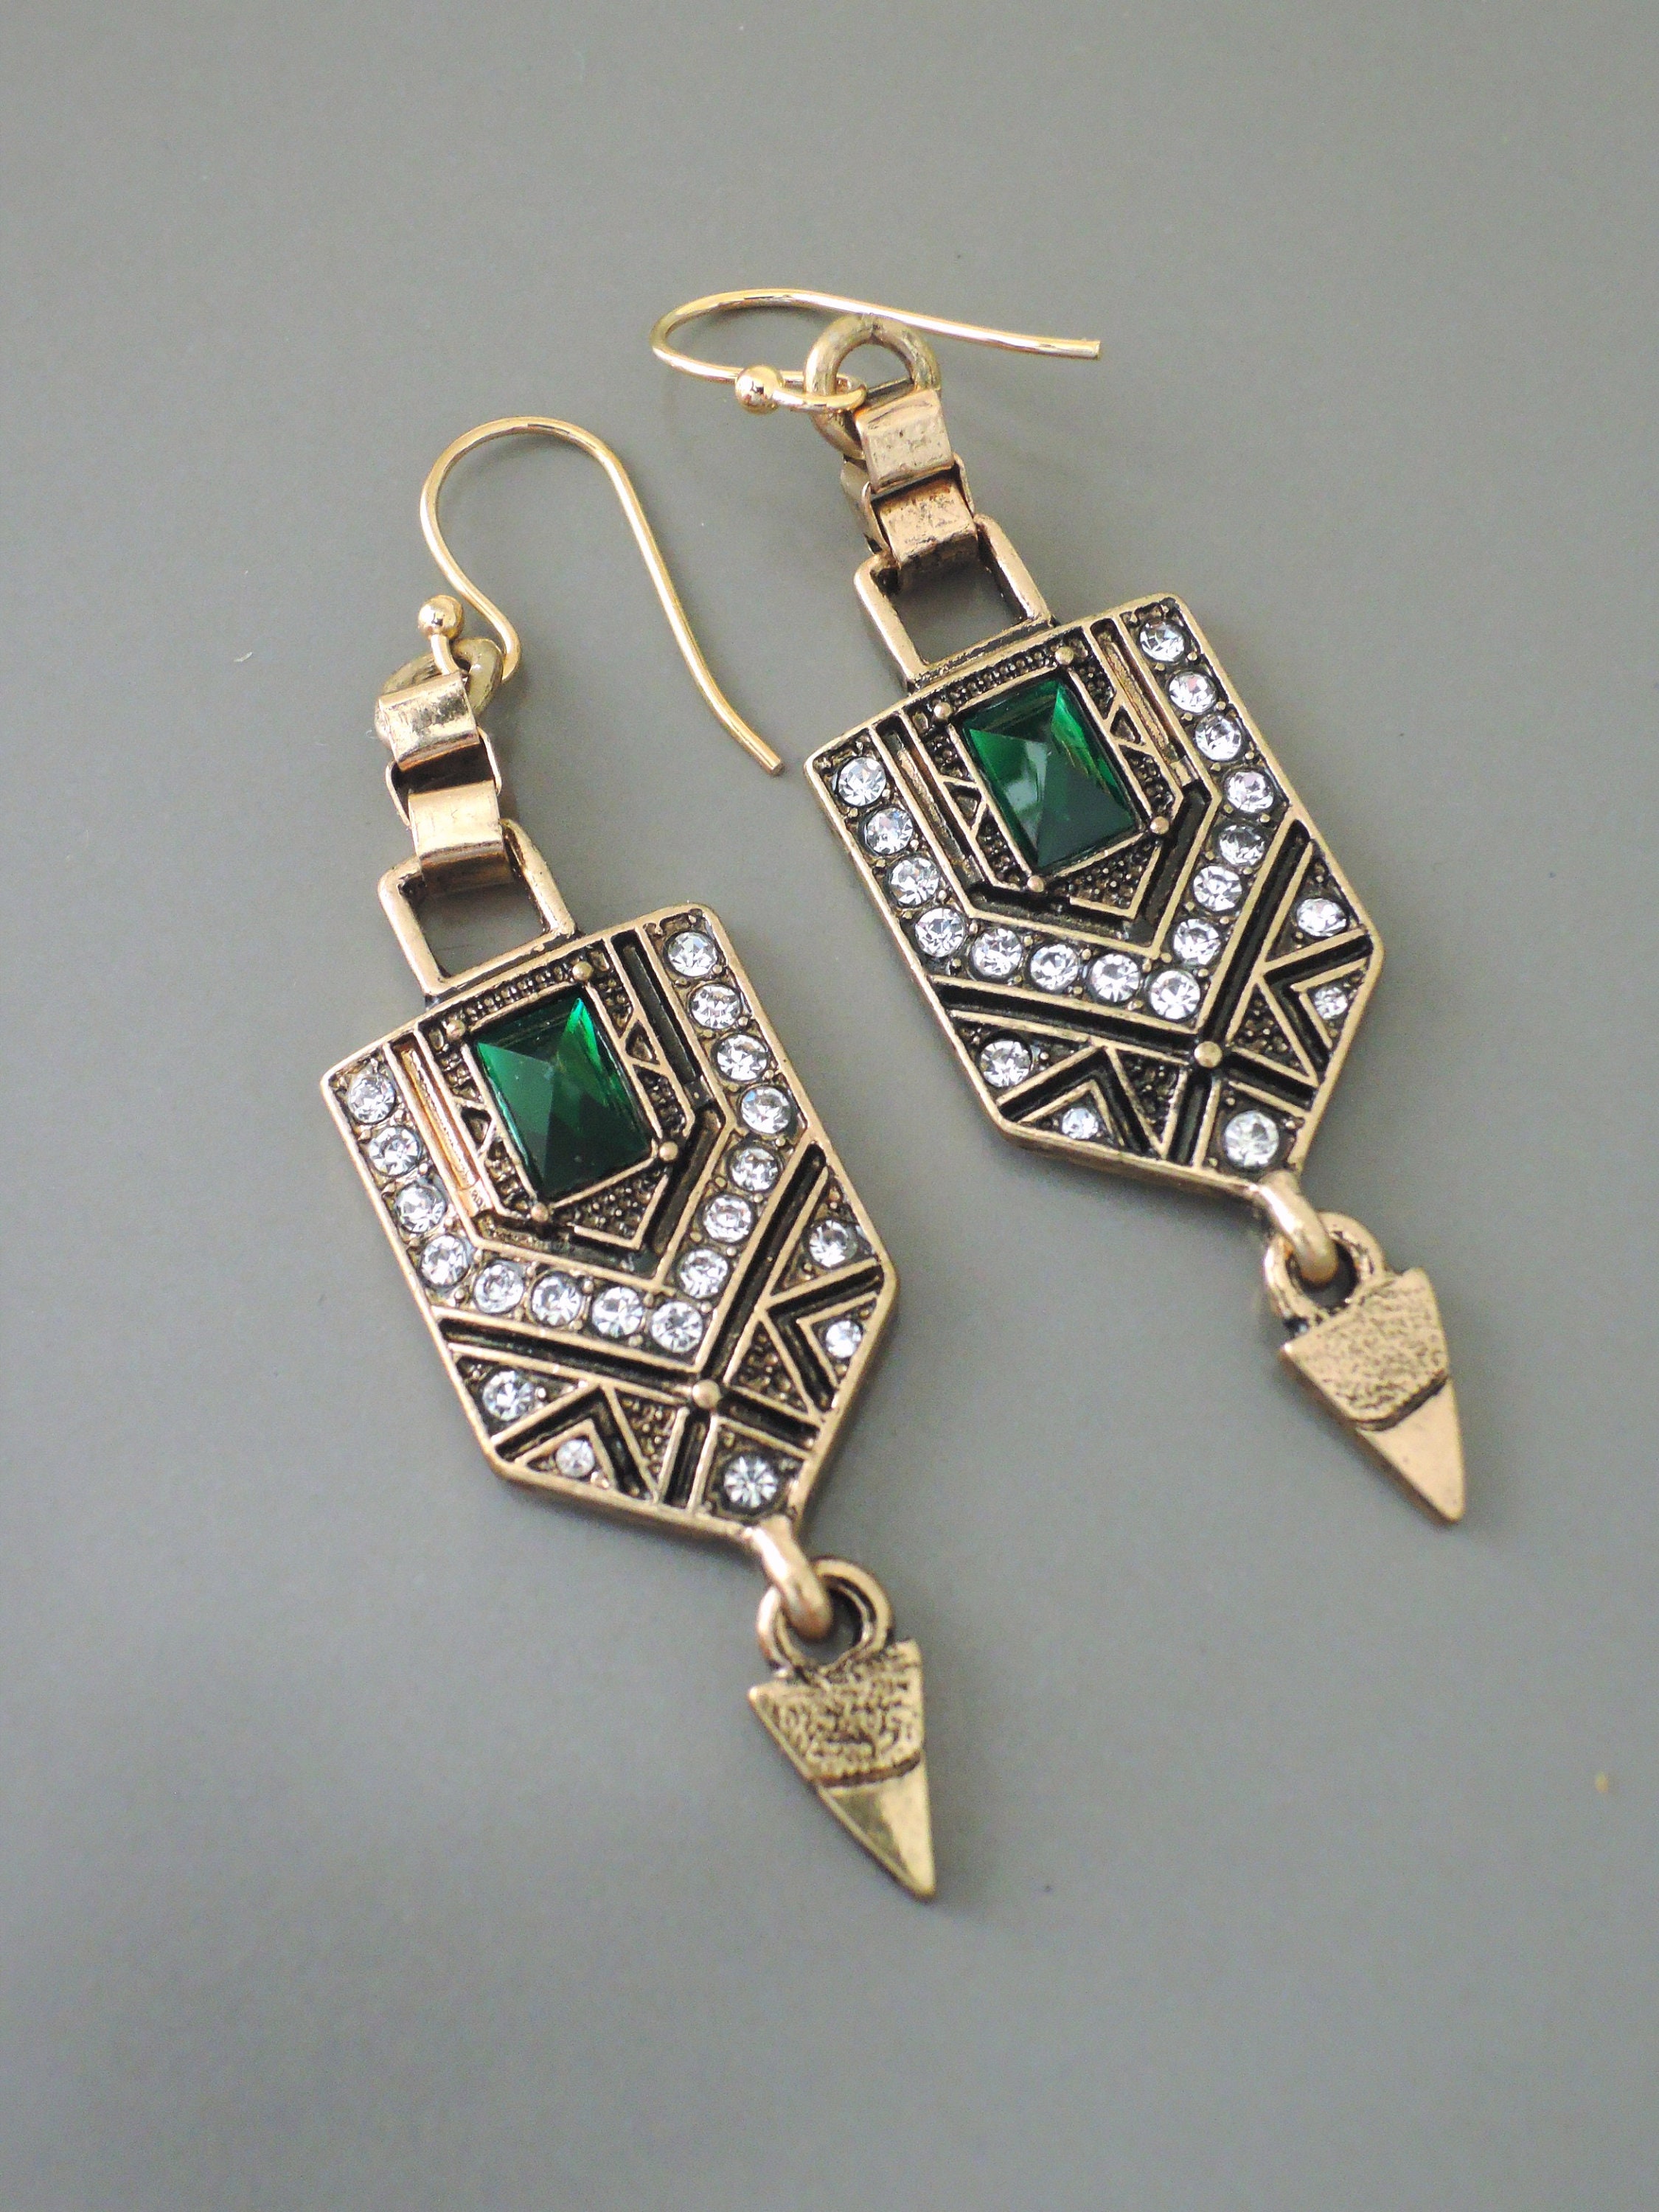 Vintage Jewelry Vintage Inspired Earrings Art Deco | Etsy